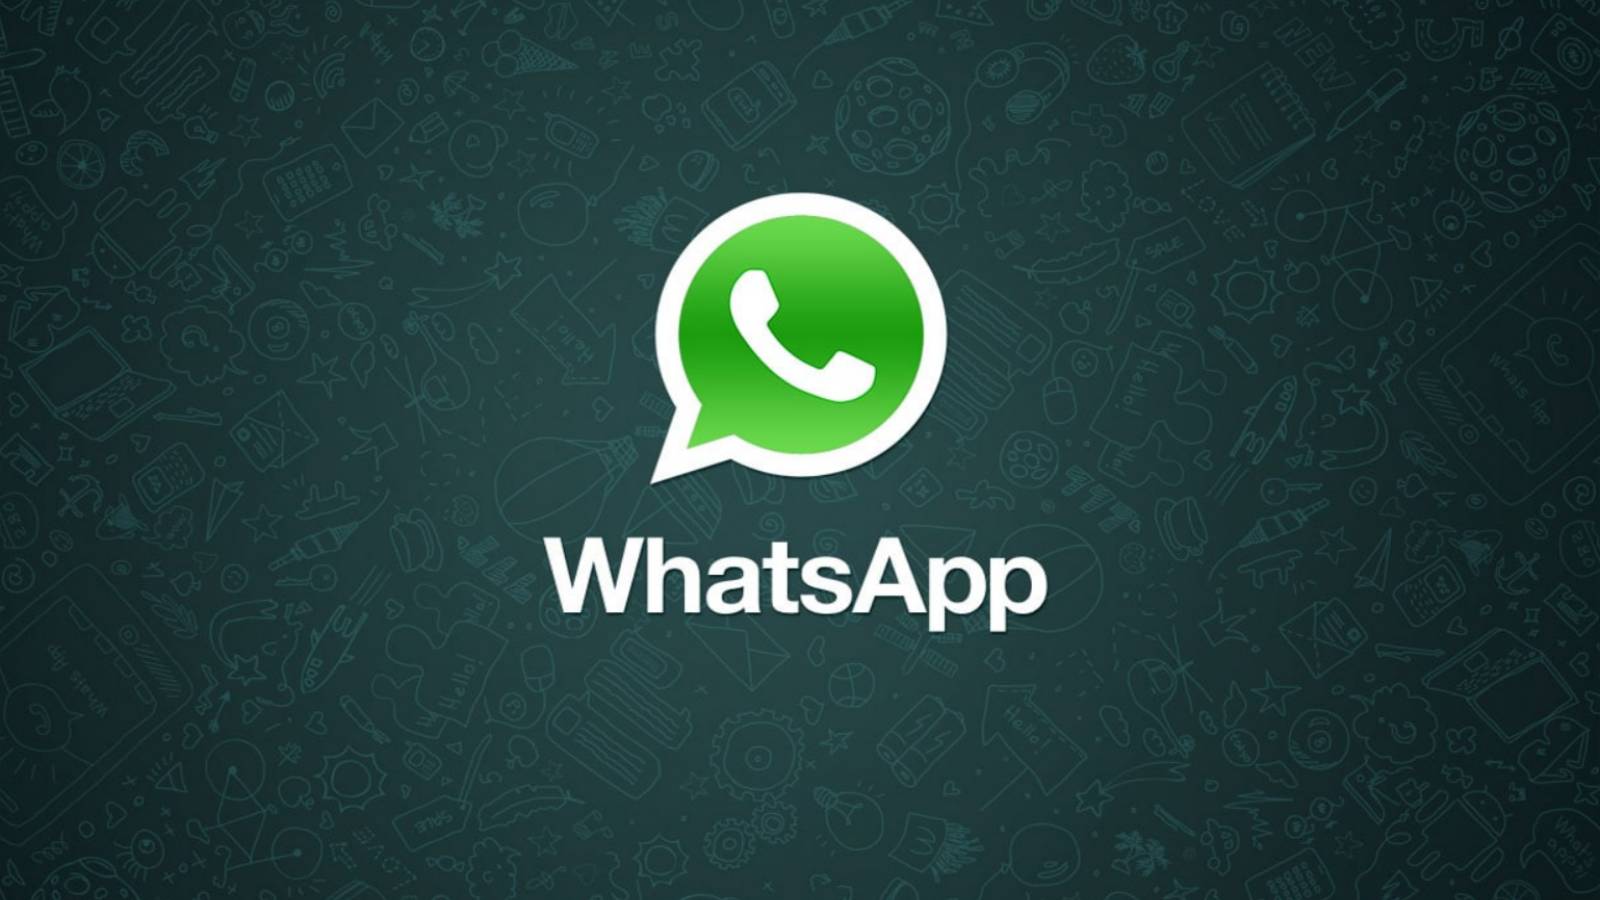 WhatsApp intredictie